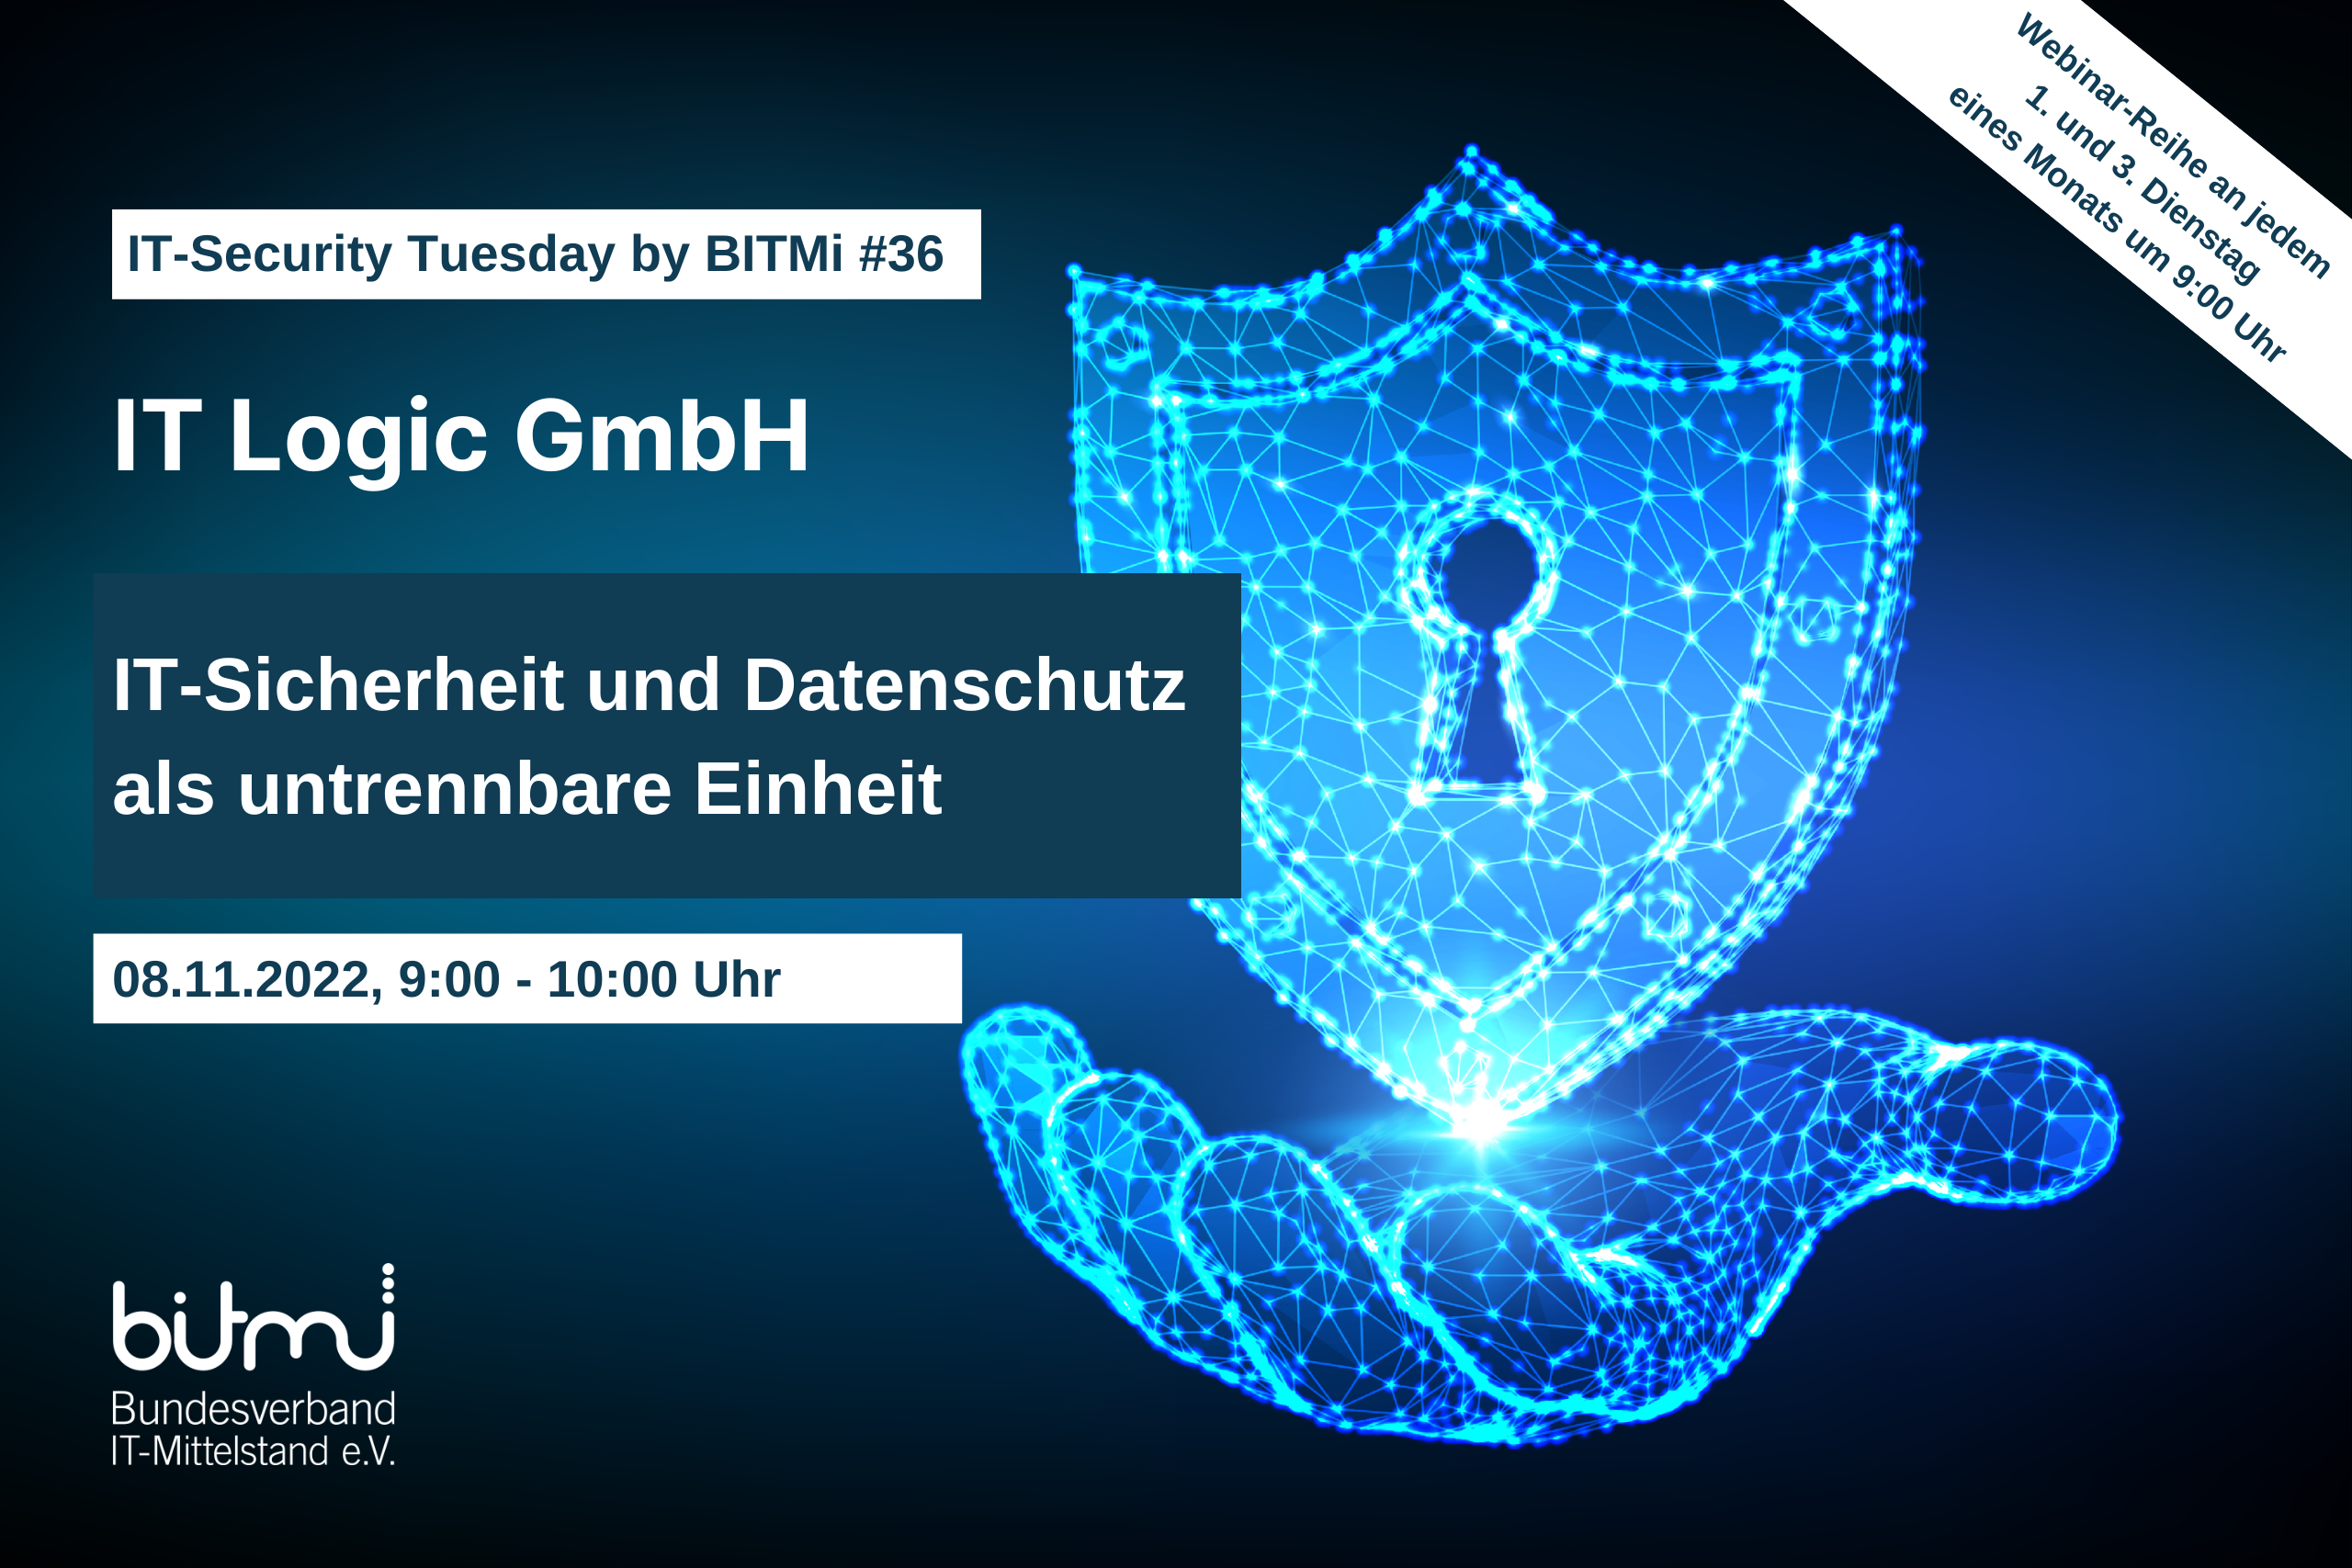 IT-Security Tuesday mit BITMi Mitglied IT Logic GmbH: IT-Sicherheit und Datenschutz als untrennbare Einheit